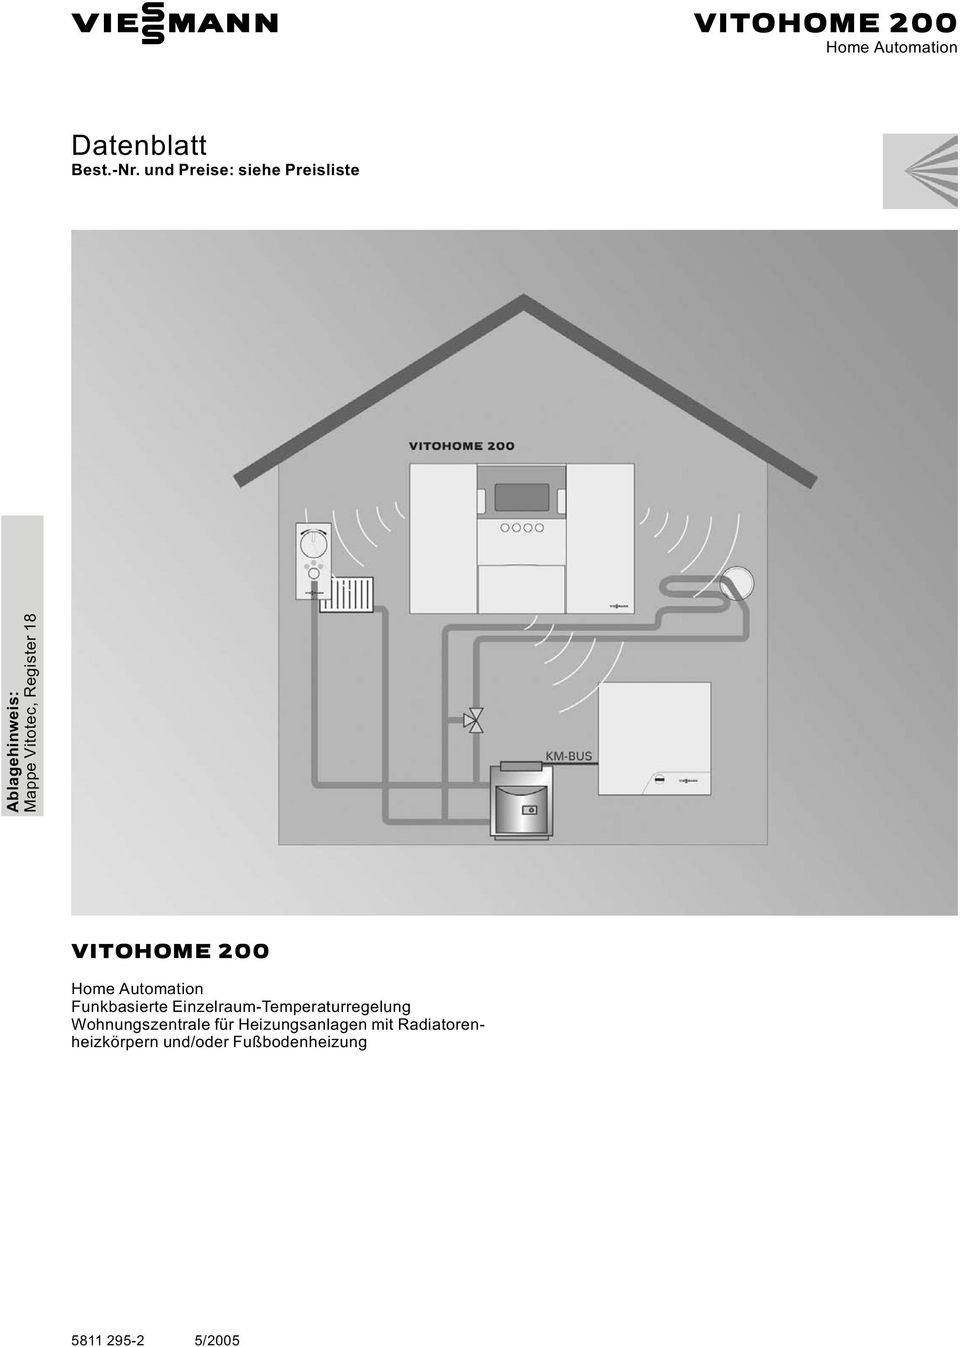 VITOHOME 200 Home Automation Funkbasierte Einzelraum-Temperaturregelung